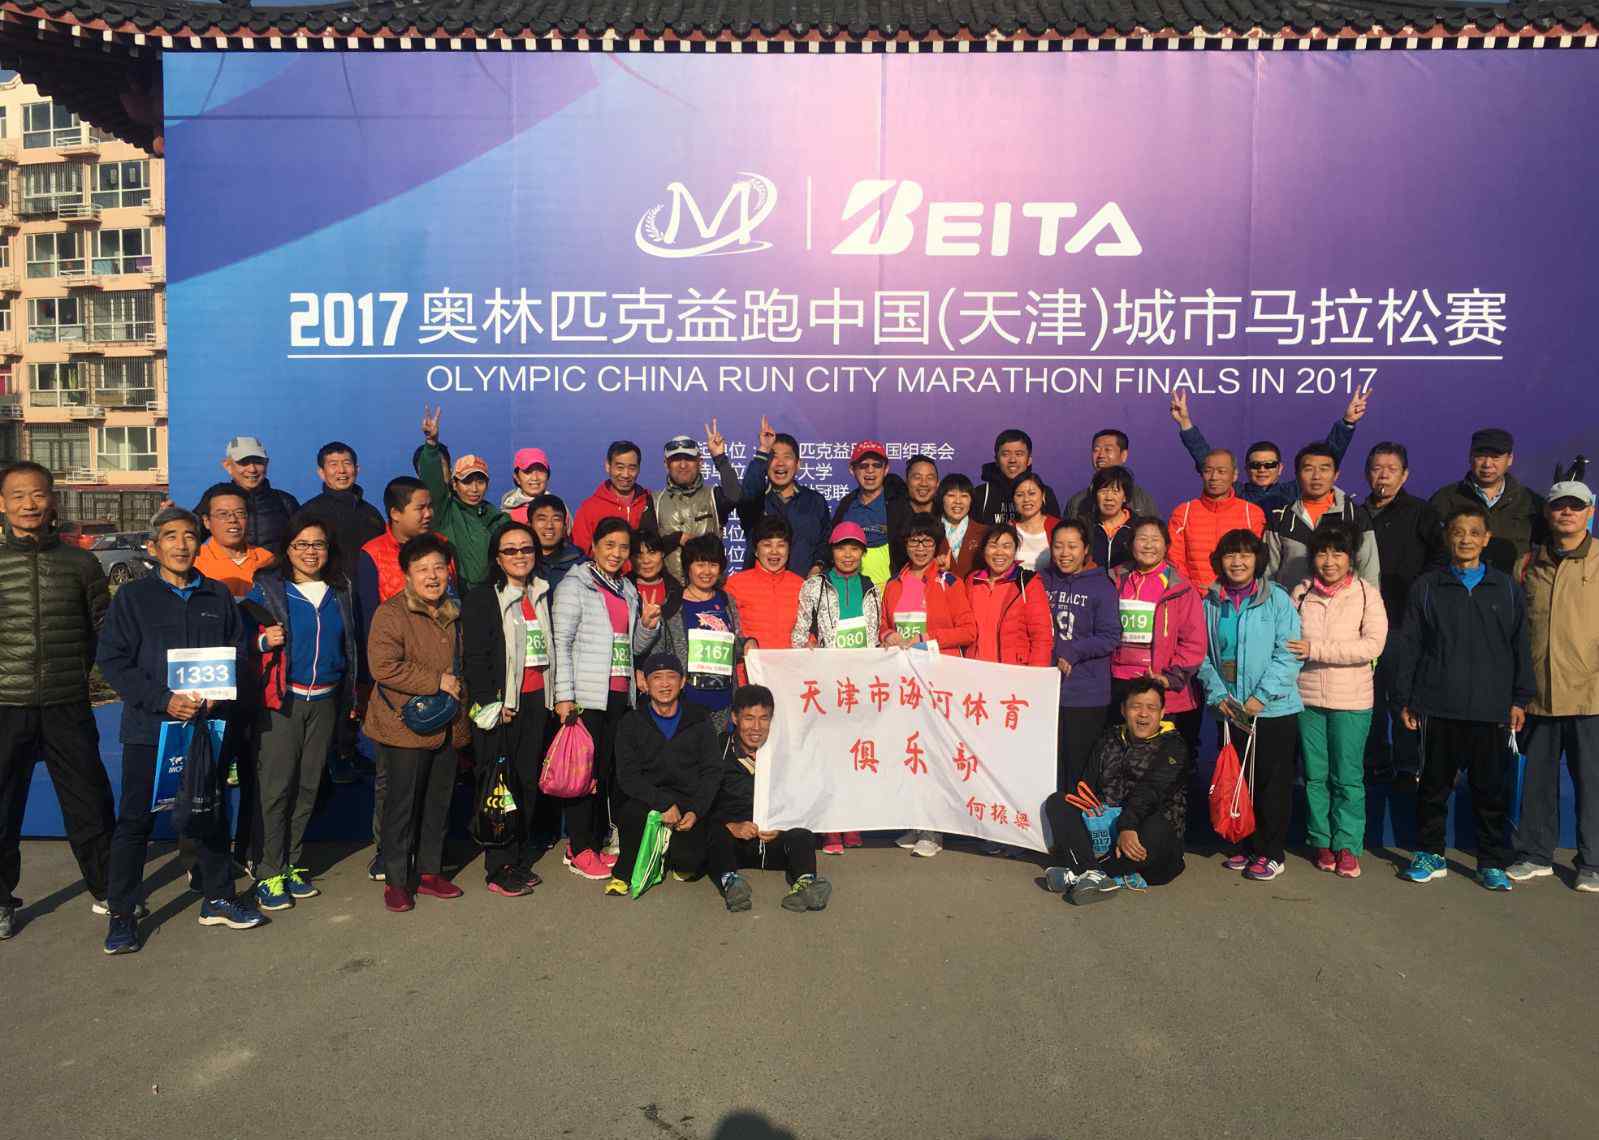 天津马拉松 2017奥林匹克益跑中国城市马拉松赛